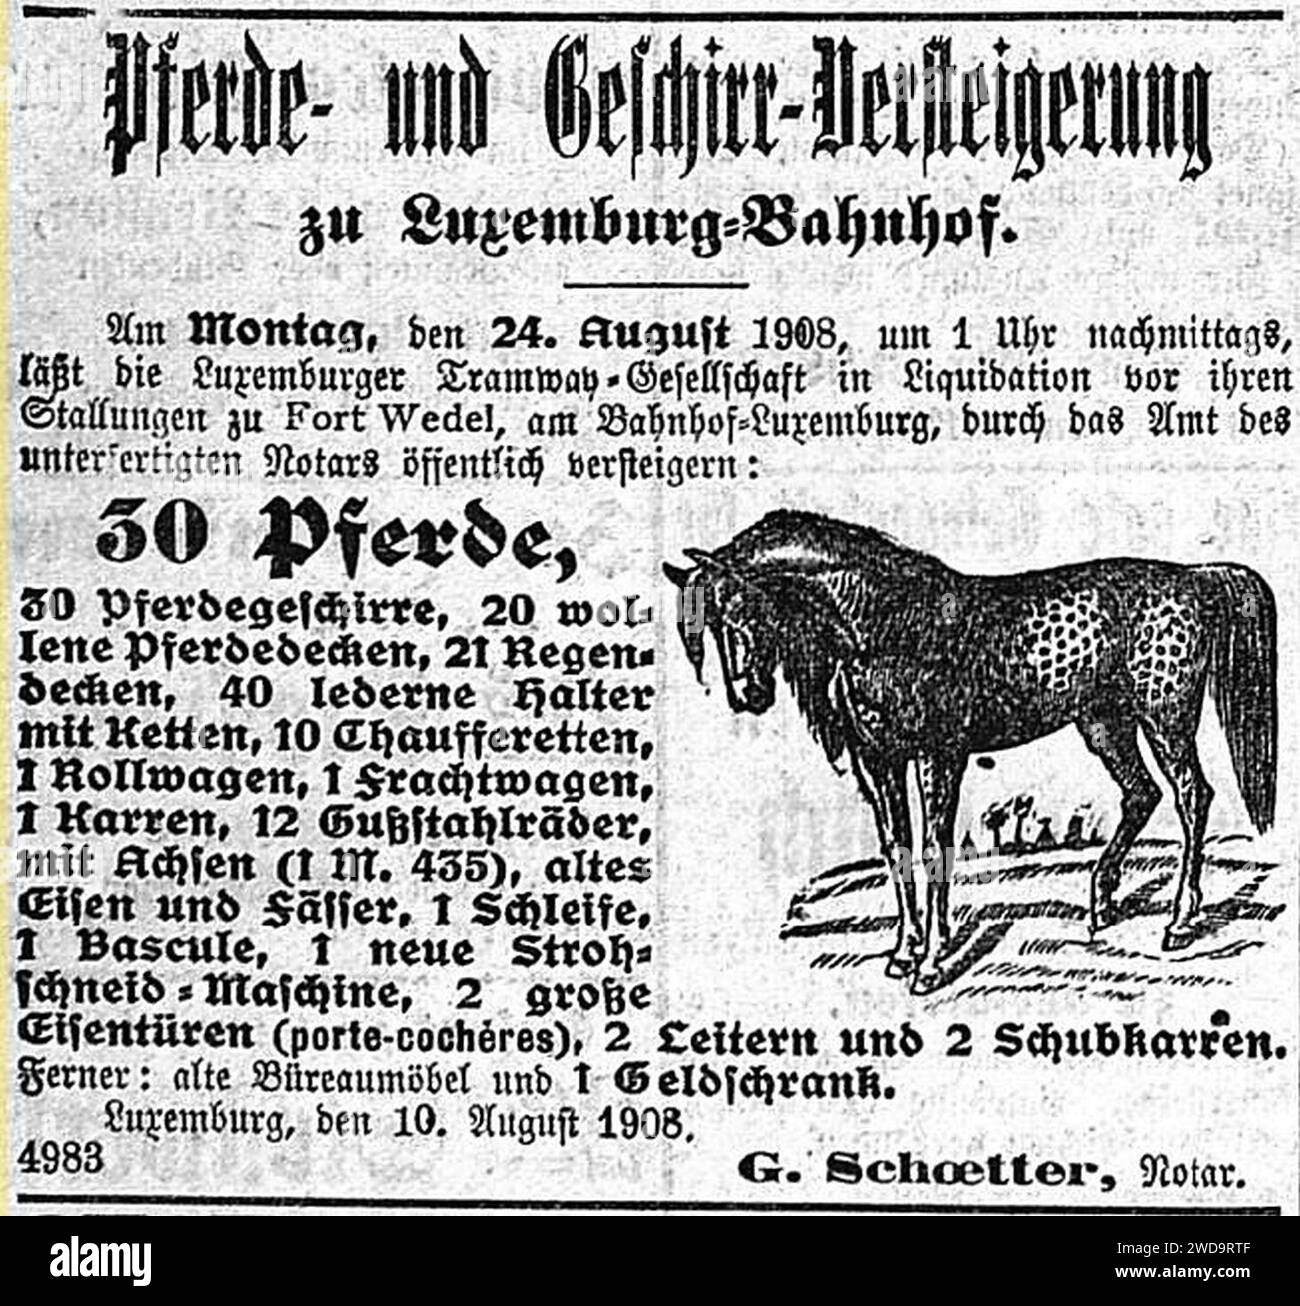 1908-08-14 Luxemburger Wort - Pferde- und Geschirrversteigerung. Stock Photo